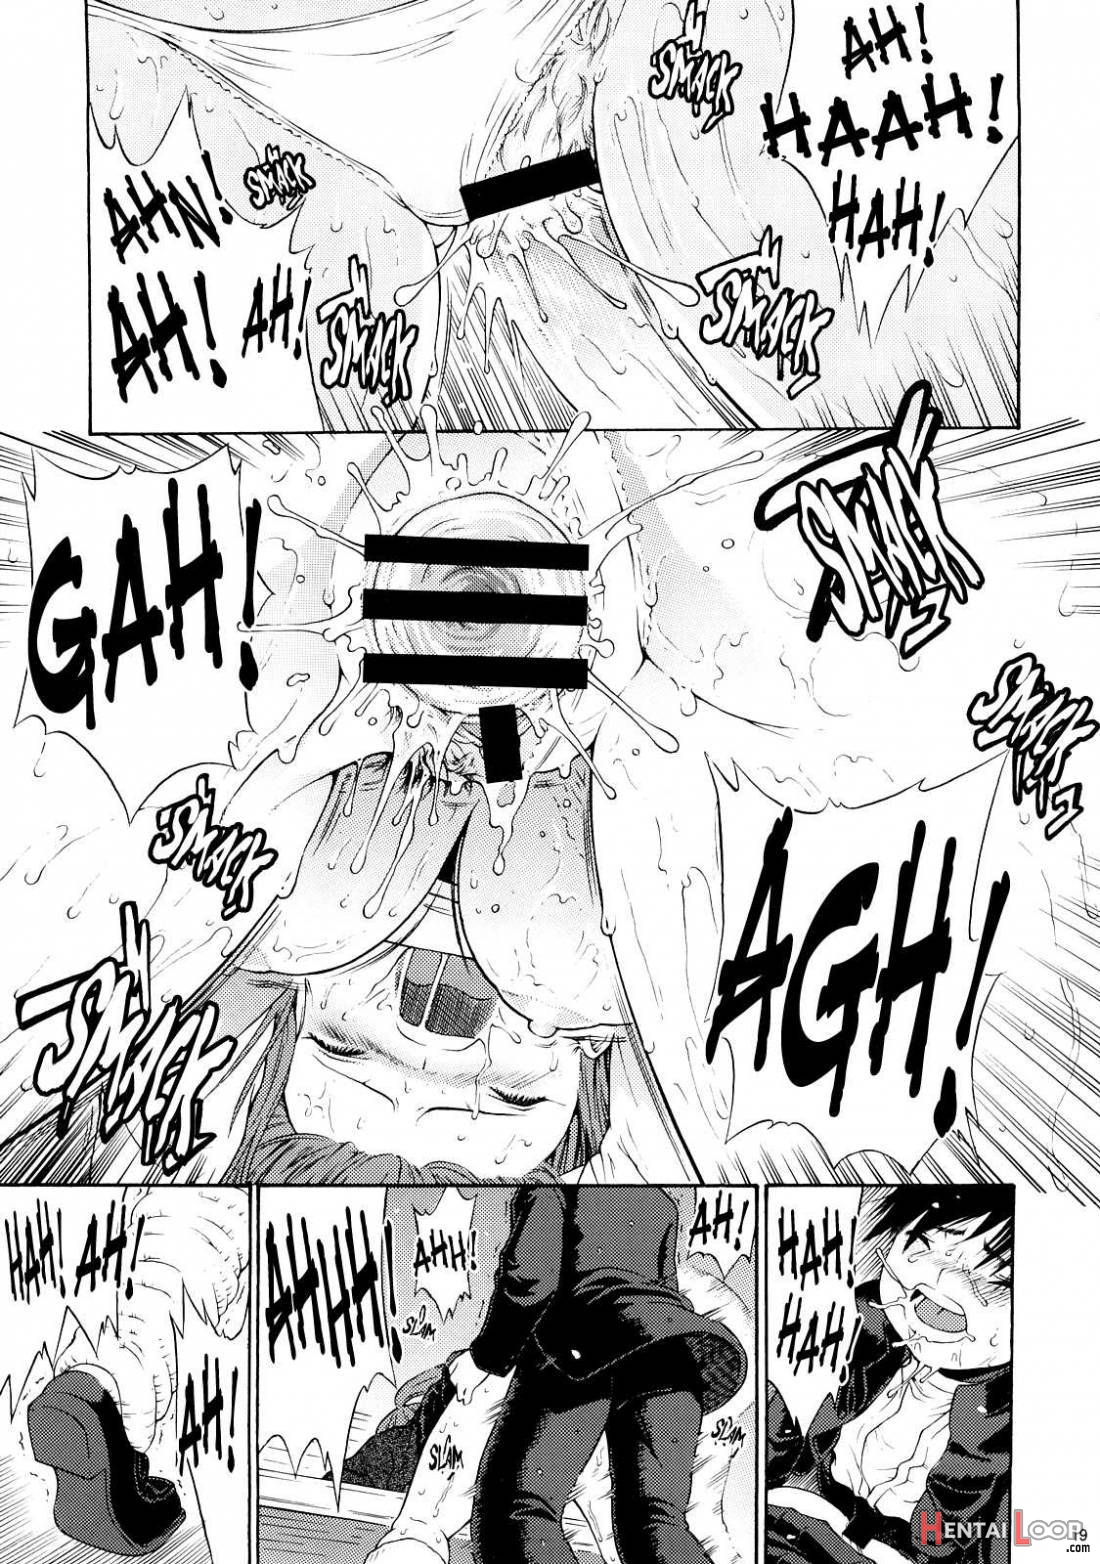 Haru Ichigo Vol.6 page 15